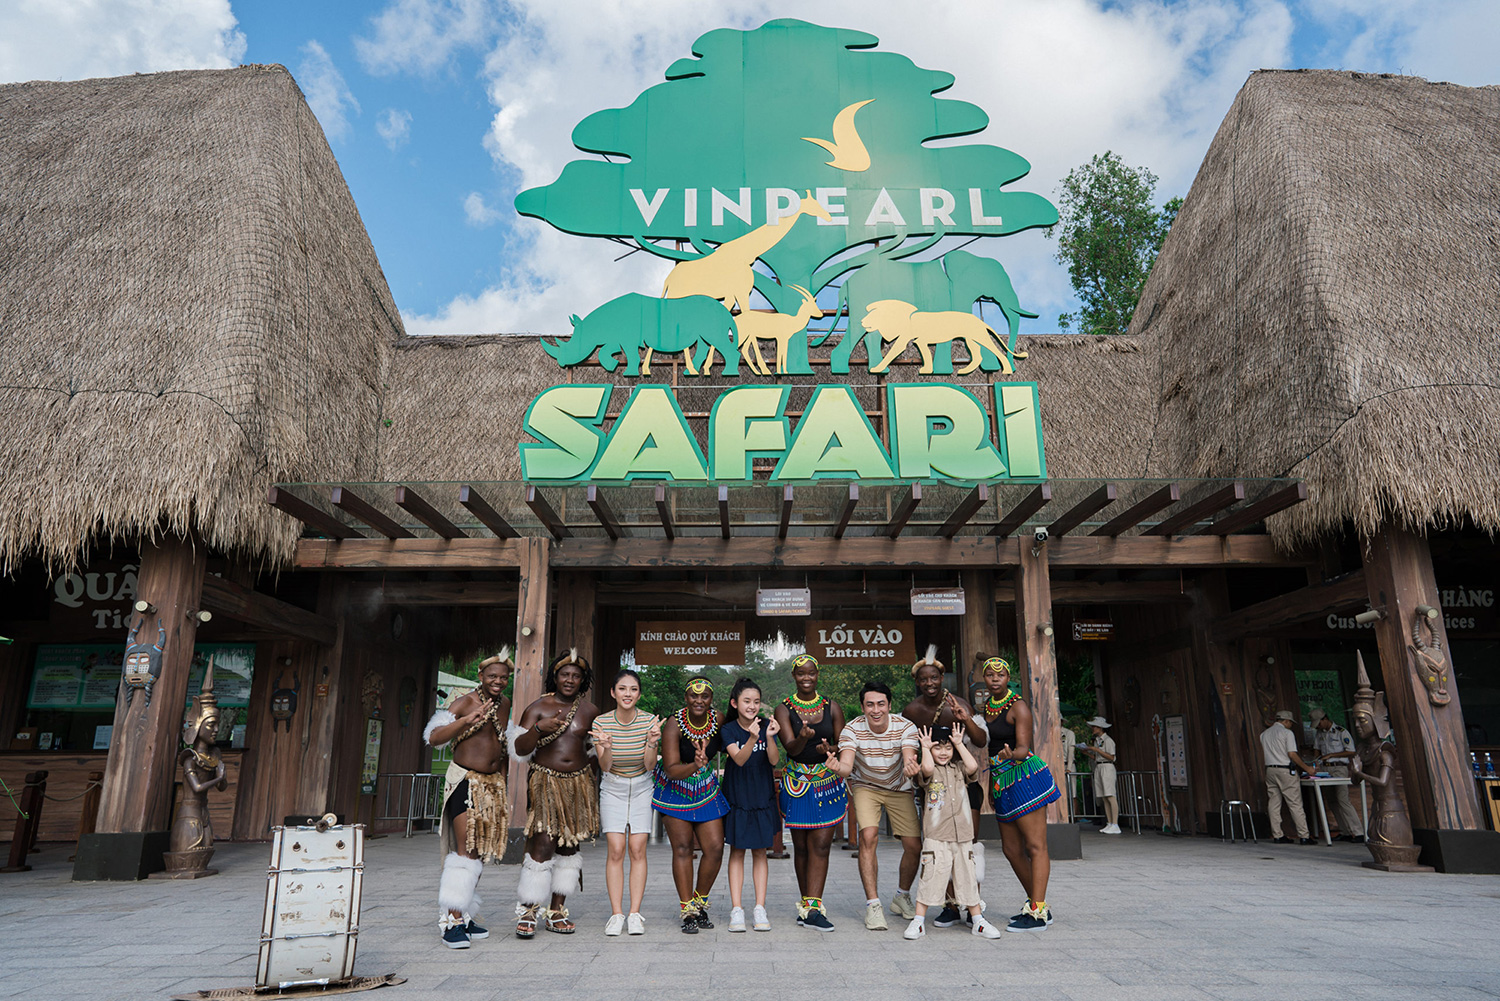 vinpearl-safari-phu-quoc-review-tu-a-z-mo-hinh-ban-so-thu-hoang-da-dau-tien-tai-viet-nam-1610504016